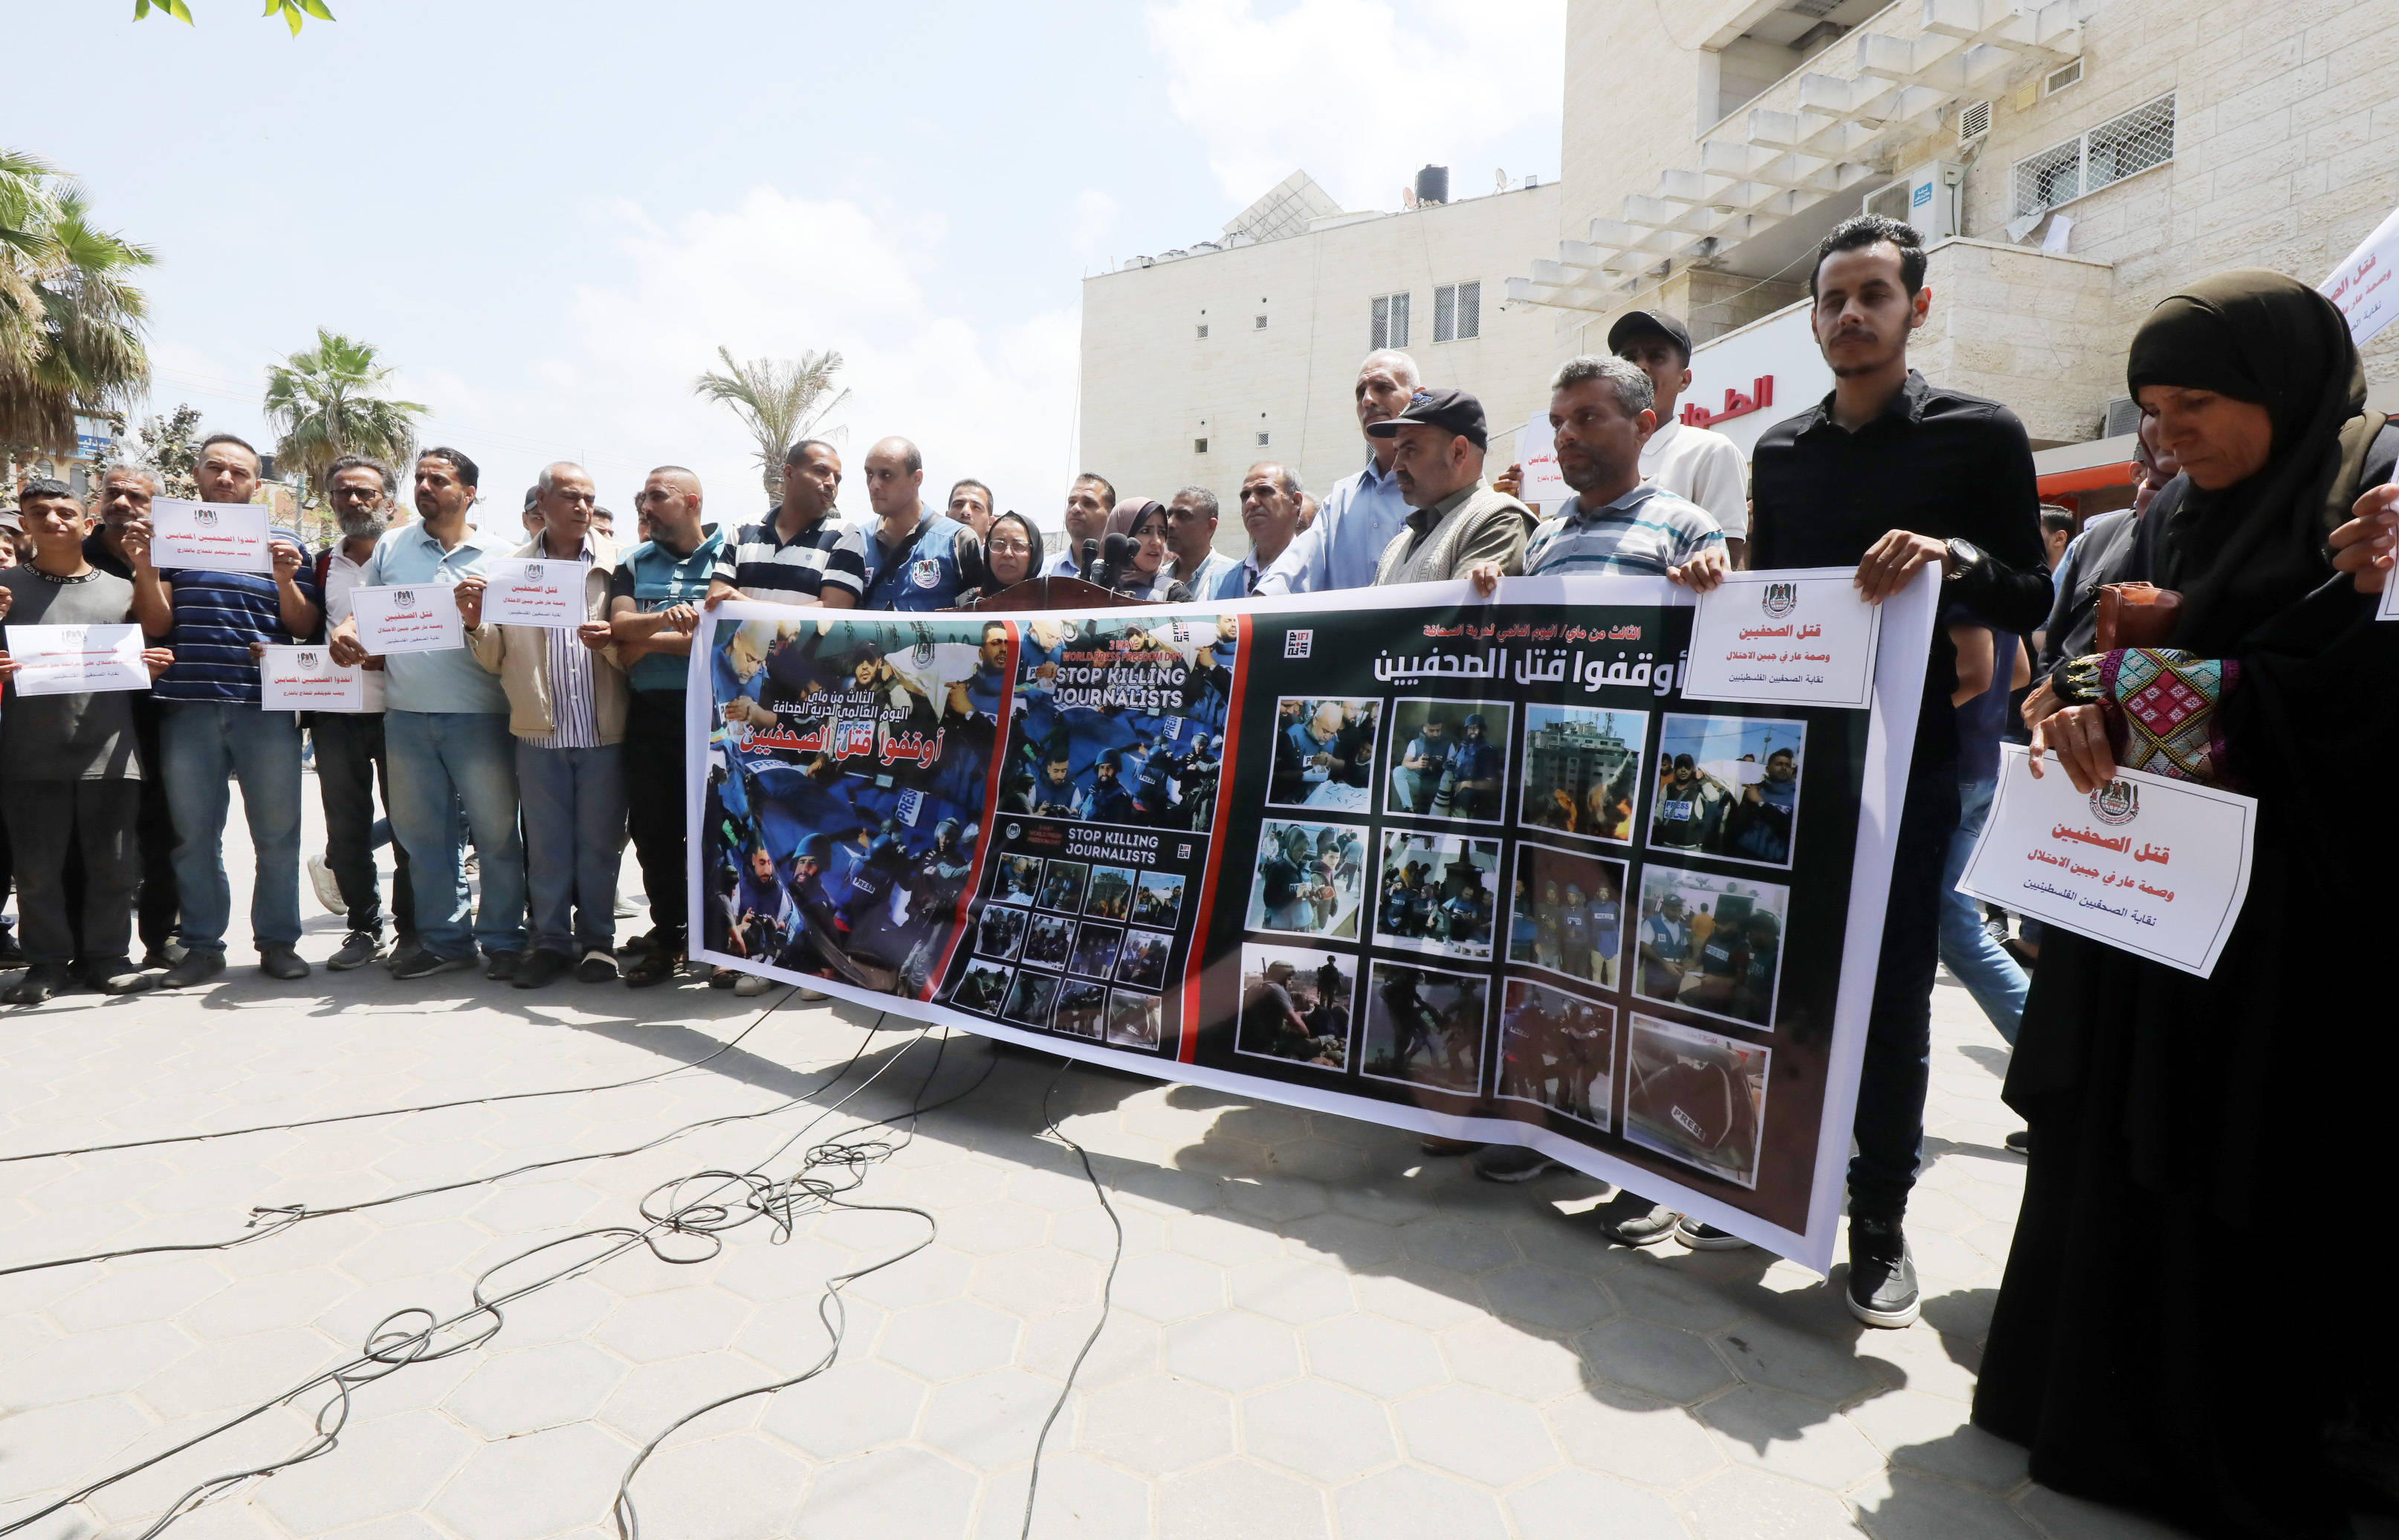 jurnali-tii-palestinieni-din-gaza-au-primit-premiul-mondial-pentru-libertatea-presei-al-unesco